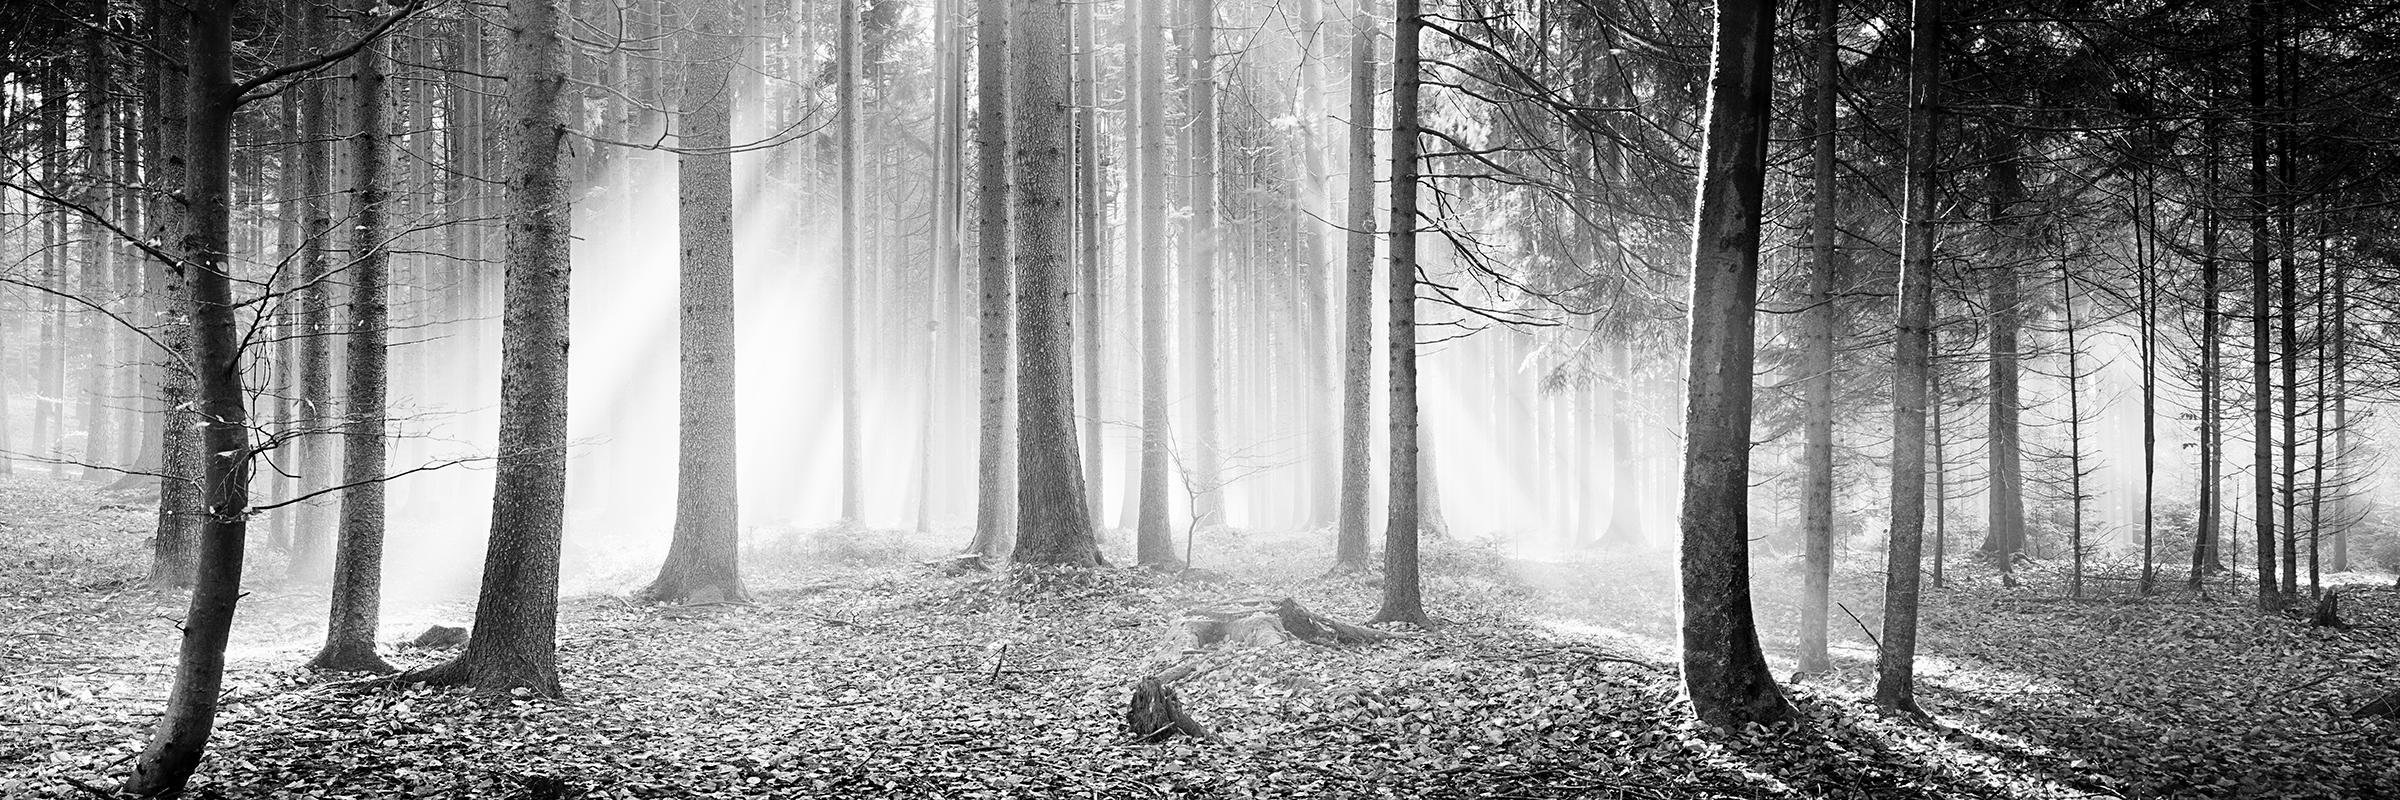 Black and White Photograph Gerald Berghammer - Forêt enchantée Arbres brumeux ensoleillé noir blanc panorama photographie de paysage